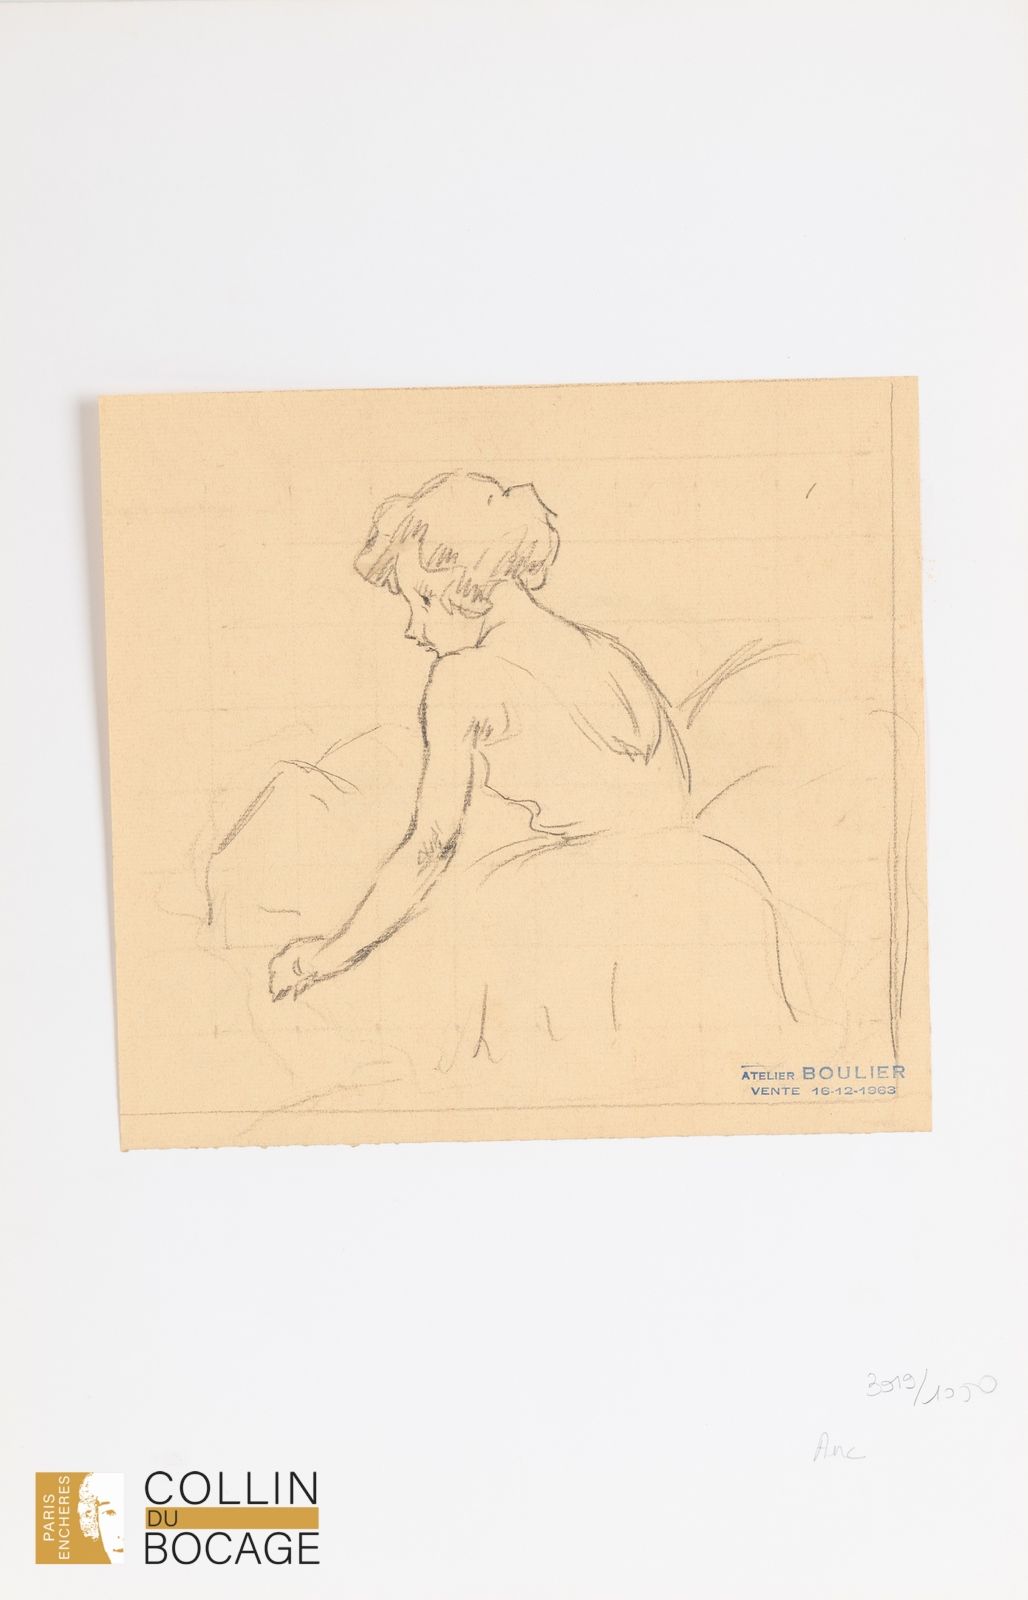 Null 吕西安-布利埃（1882-1963）
舞者
方格纸上的炭笔
工作室销售印章 
23.5 x 25 厘米 
(背面另一幅素描）